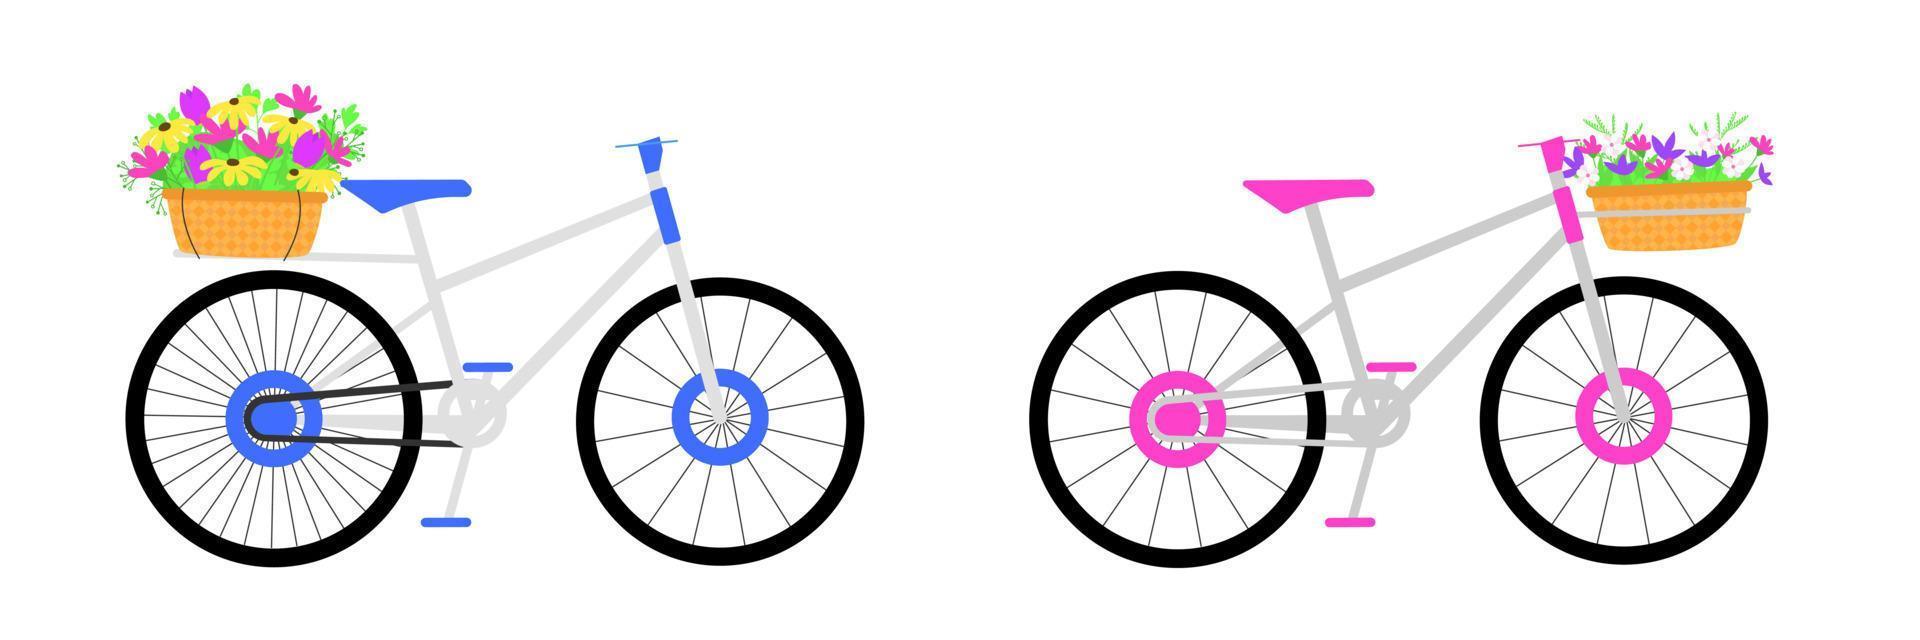 två cykel med korgar av blommor. vektor illustration.